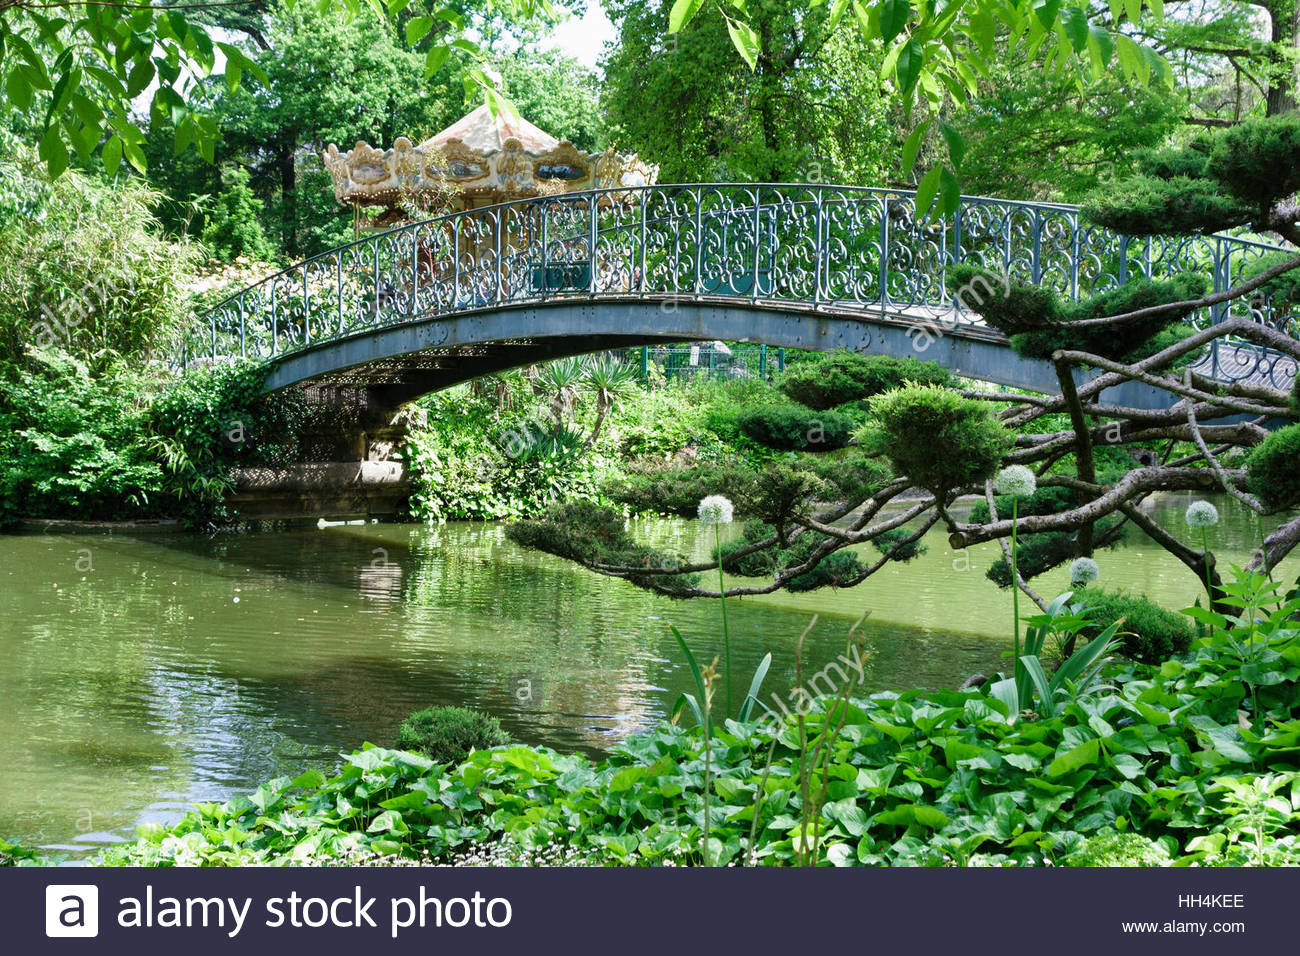 Jardin Public Bordeaux Frais Wrought Iron Bridge In the Jardin Public Bordeaux Gironde